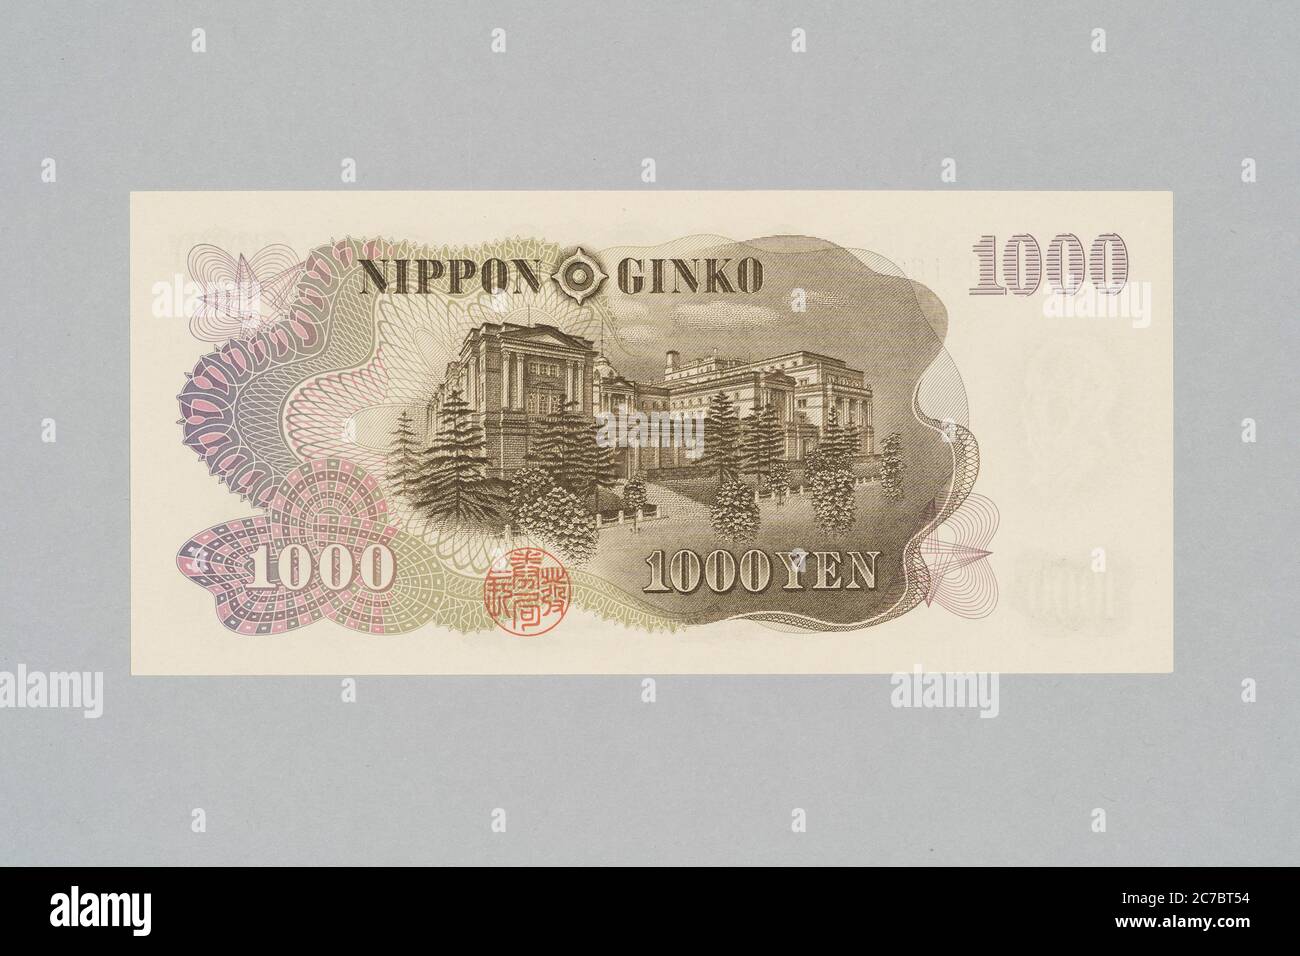 Rückseite der japanischen Banknote 1000 Yen, Hirobumi Ito Design, Private Collection Stockfoto